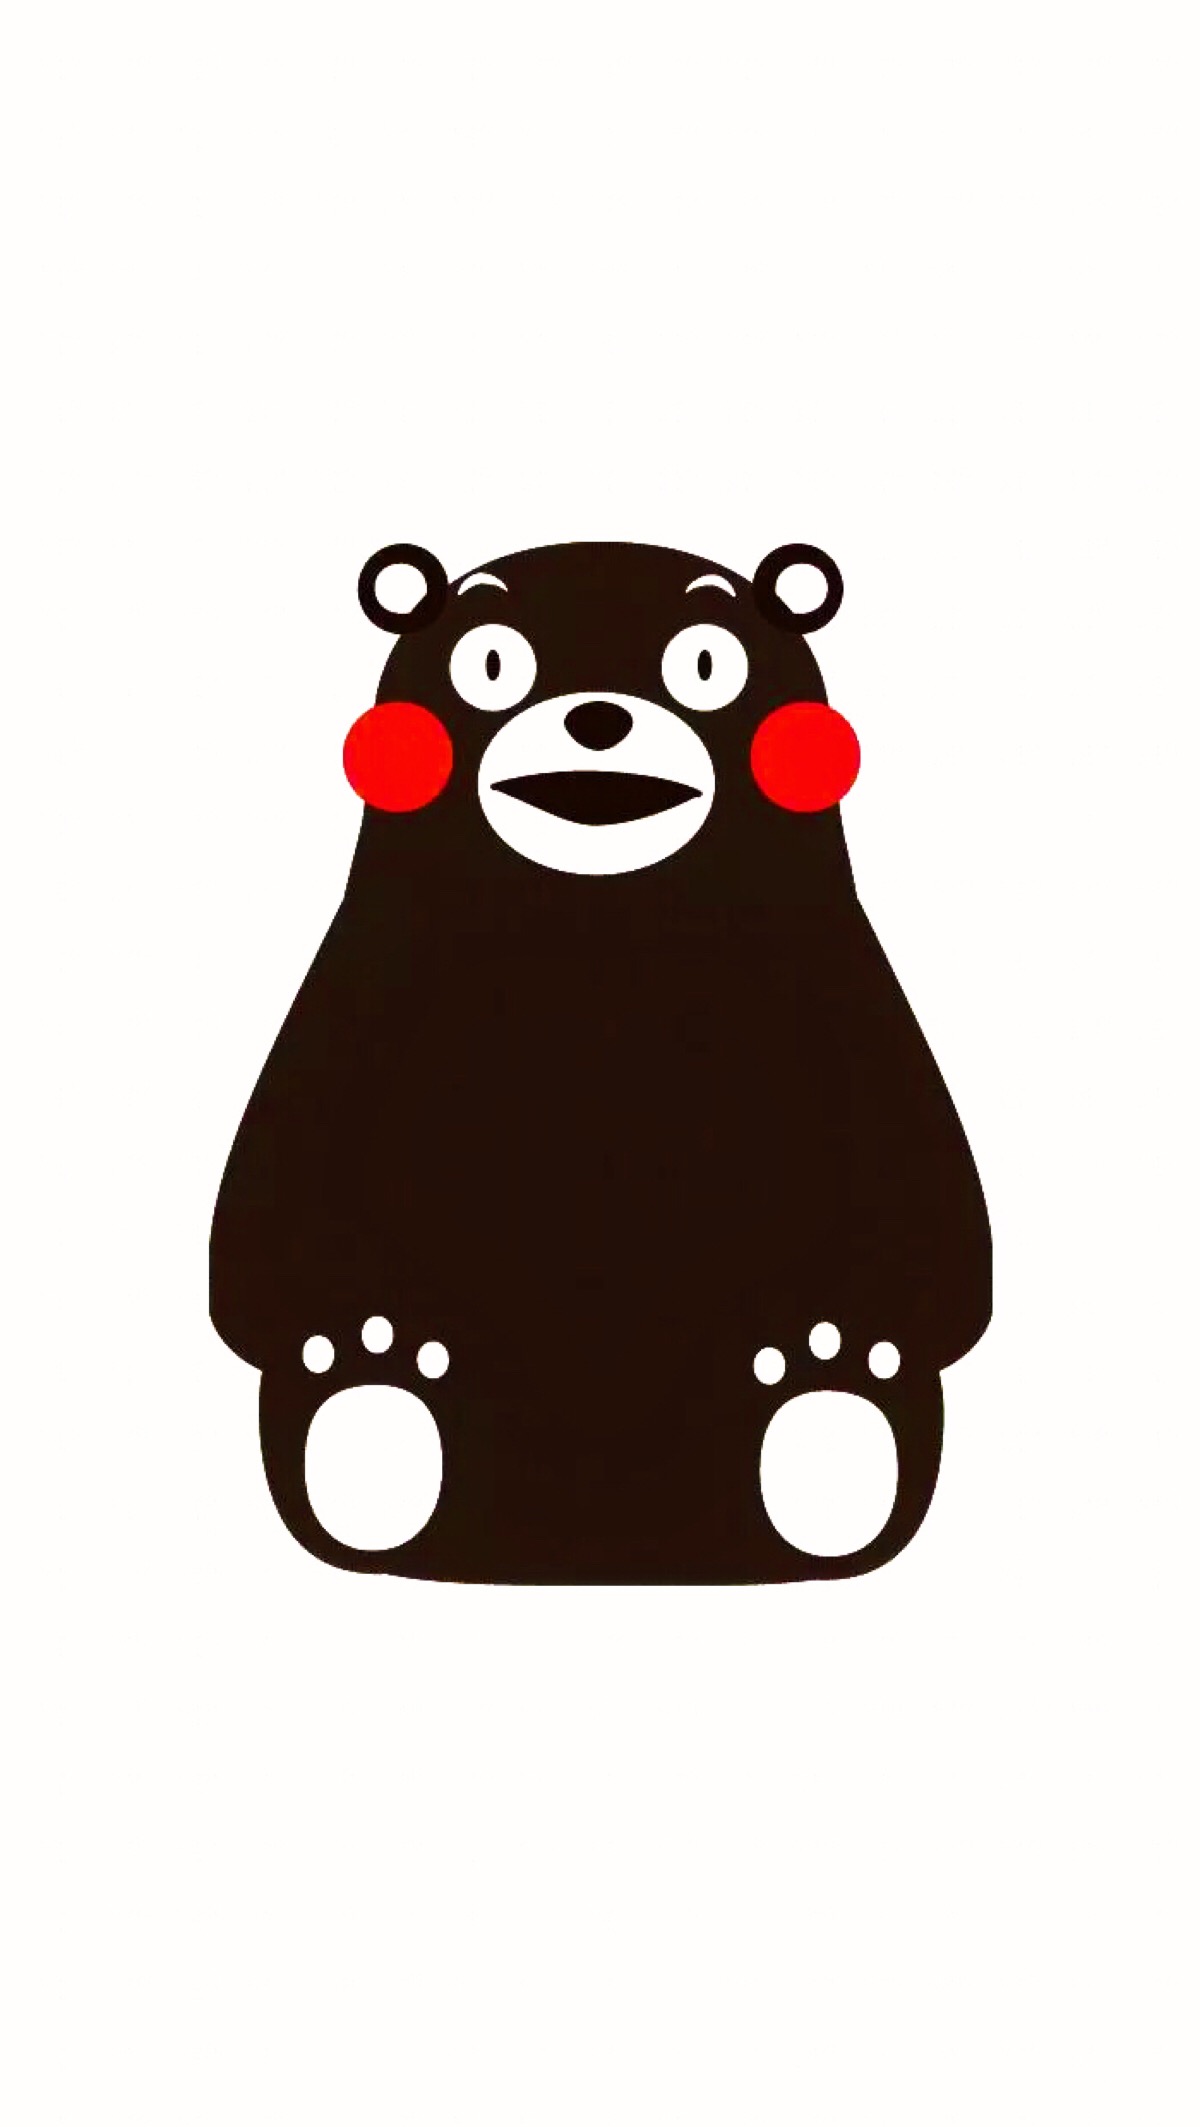 从熊本熊到萌物PK,日本为何沉迷于吉祥物文化?